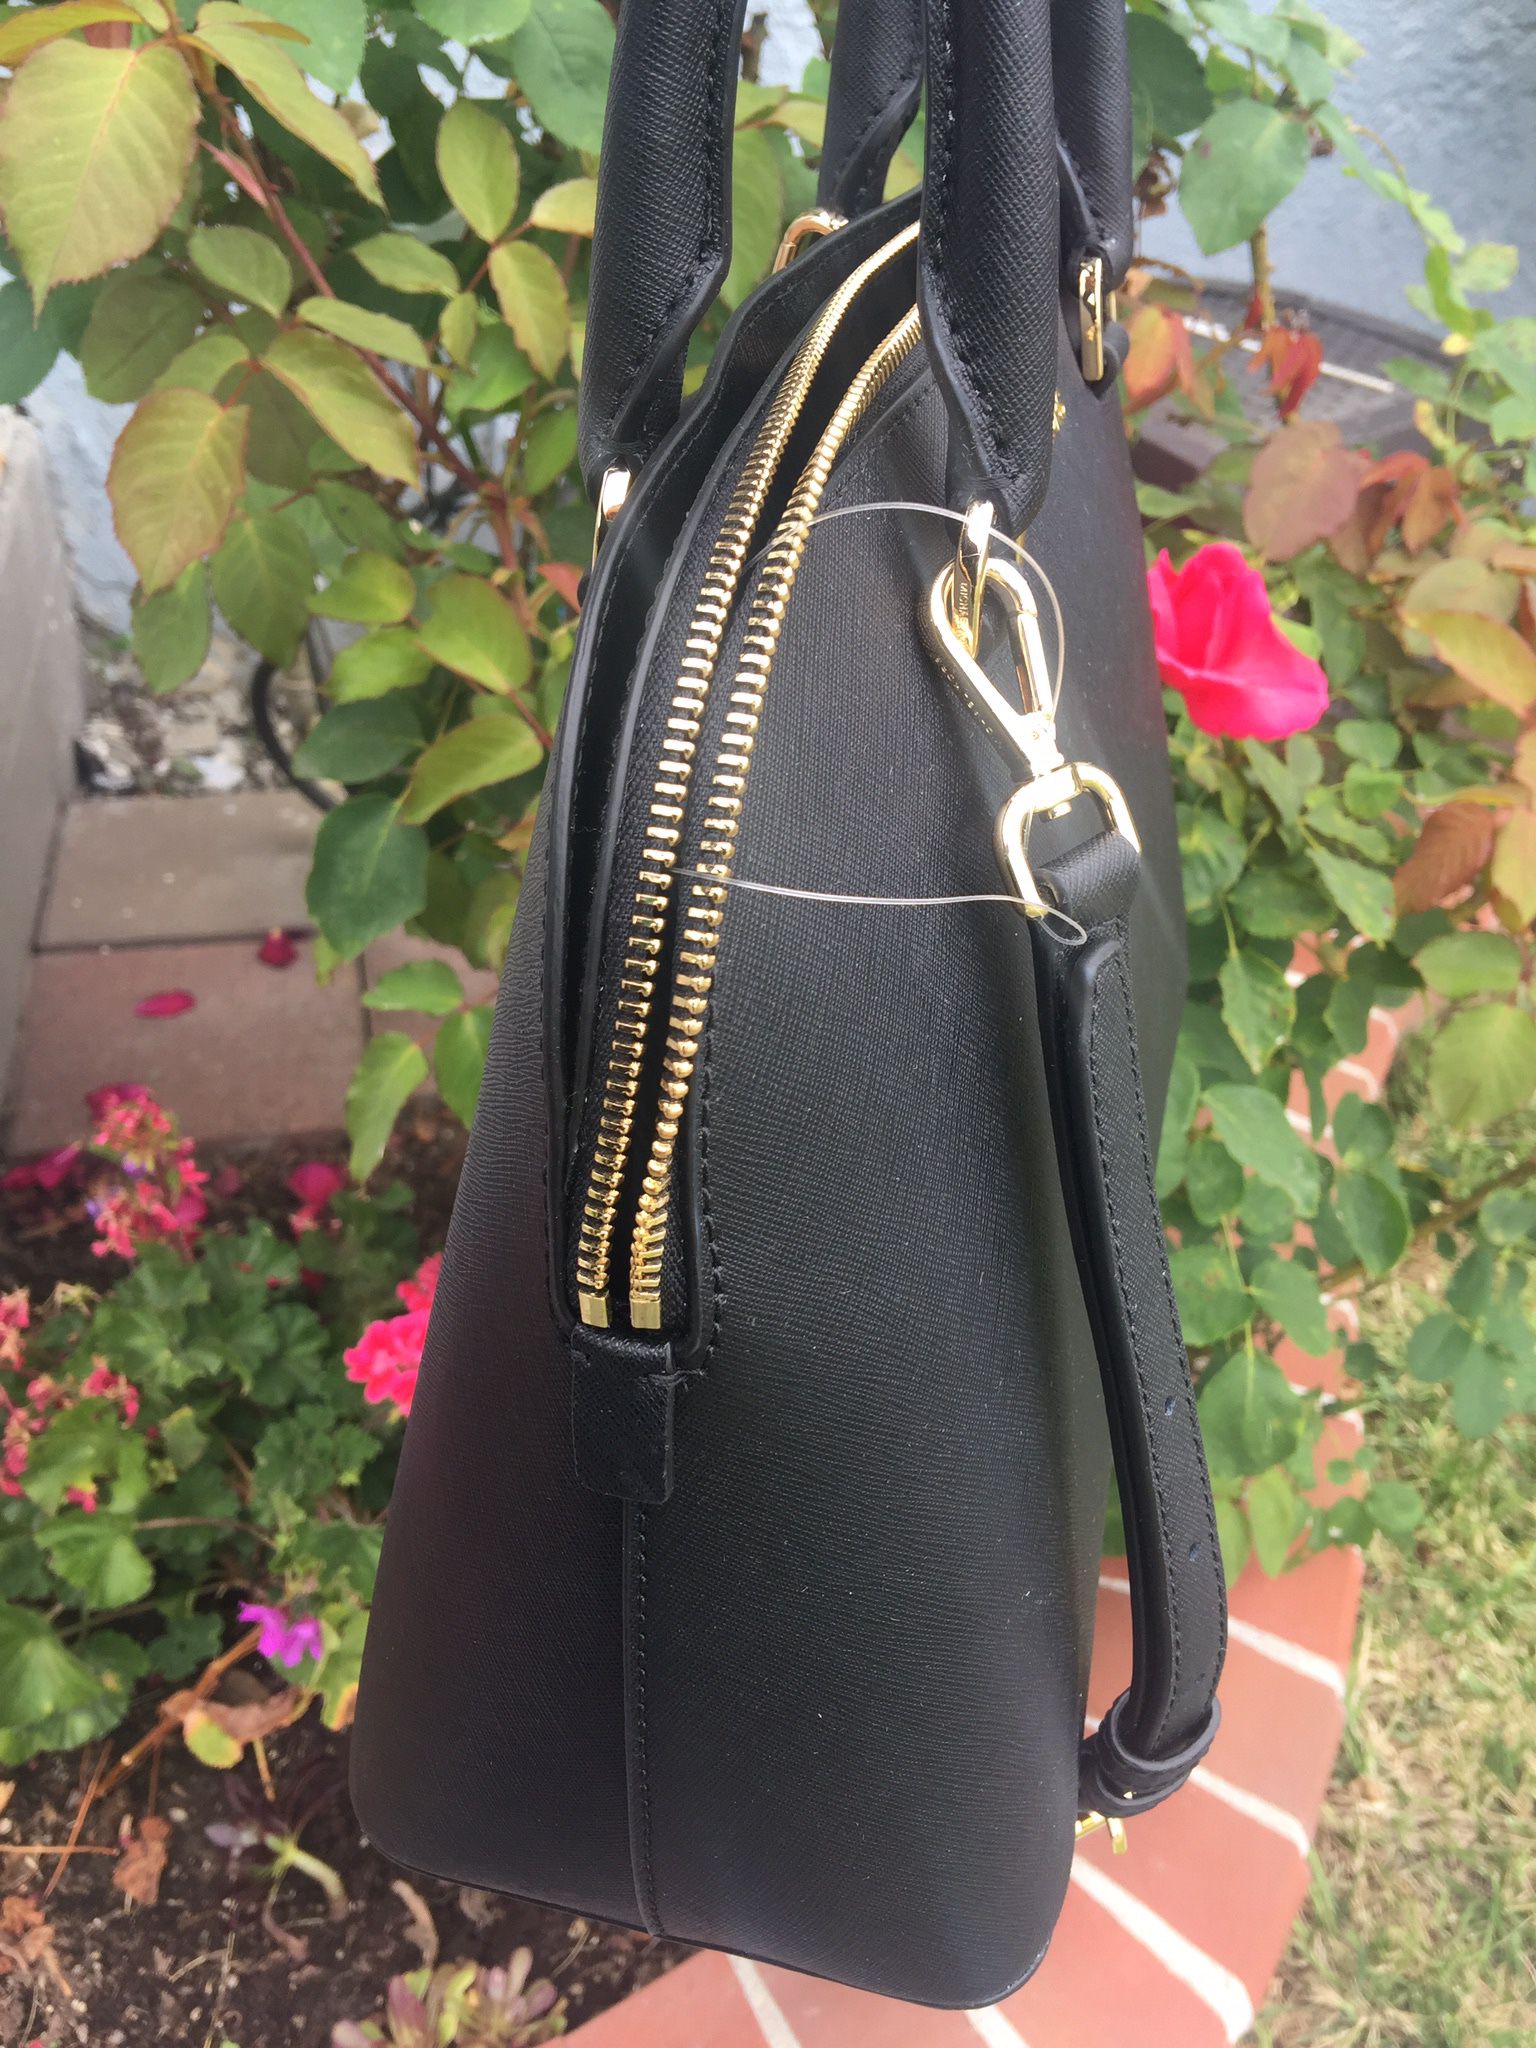 Michael Kors Emmy Satchel Handbag for Sale in Gardena, CA - OfferUp